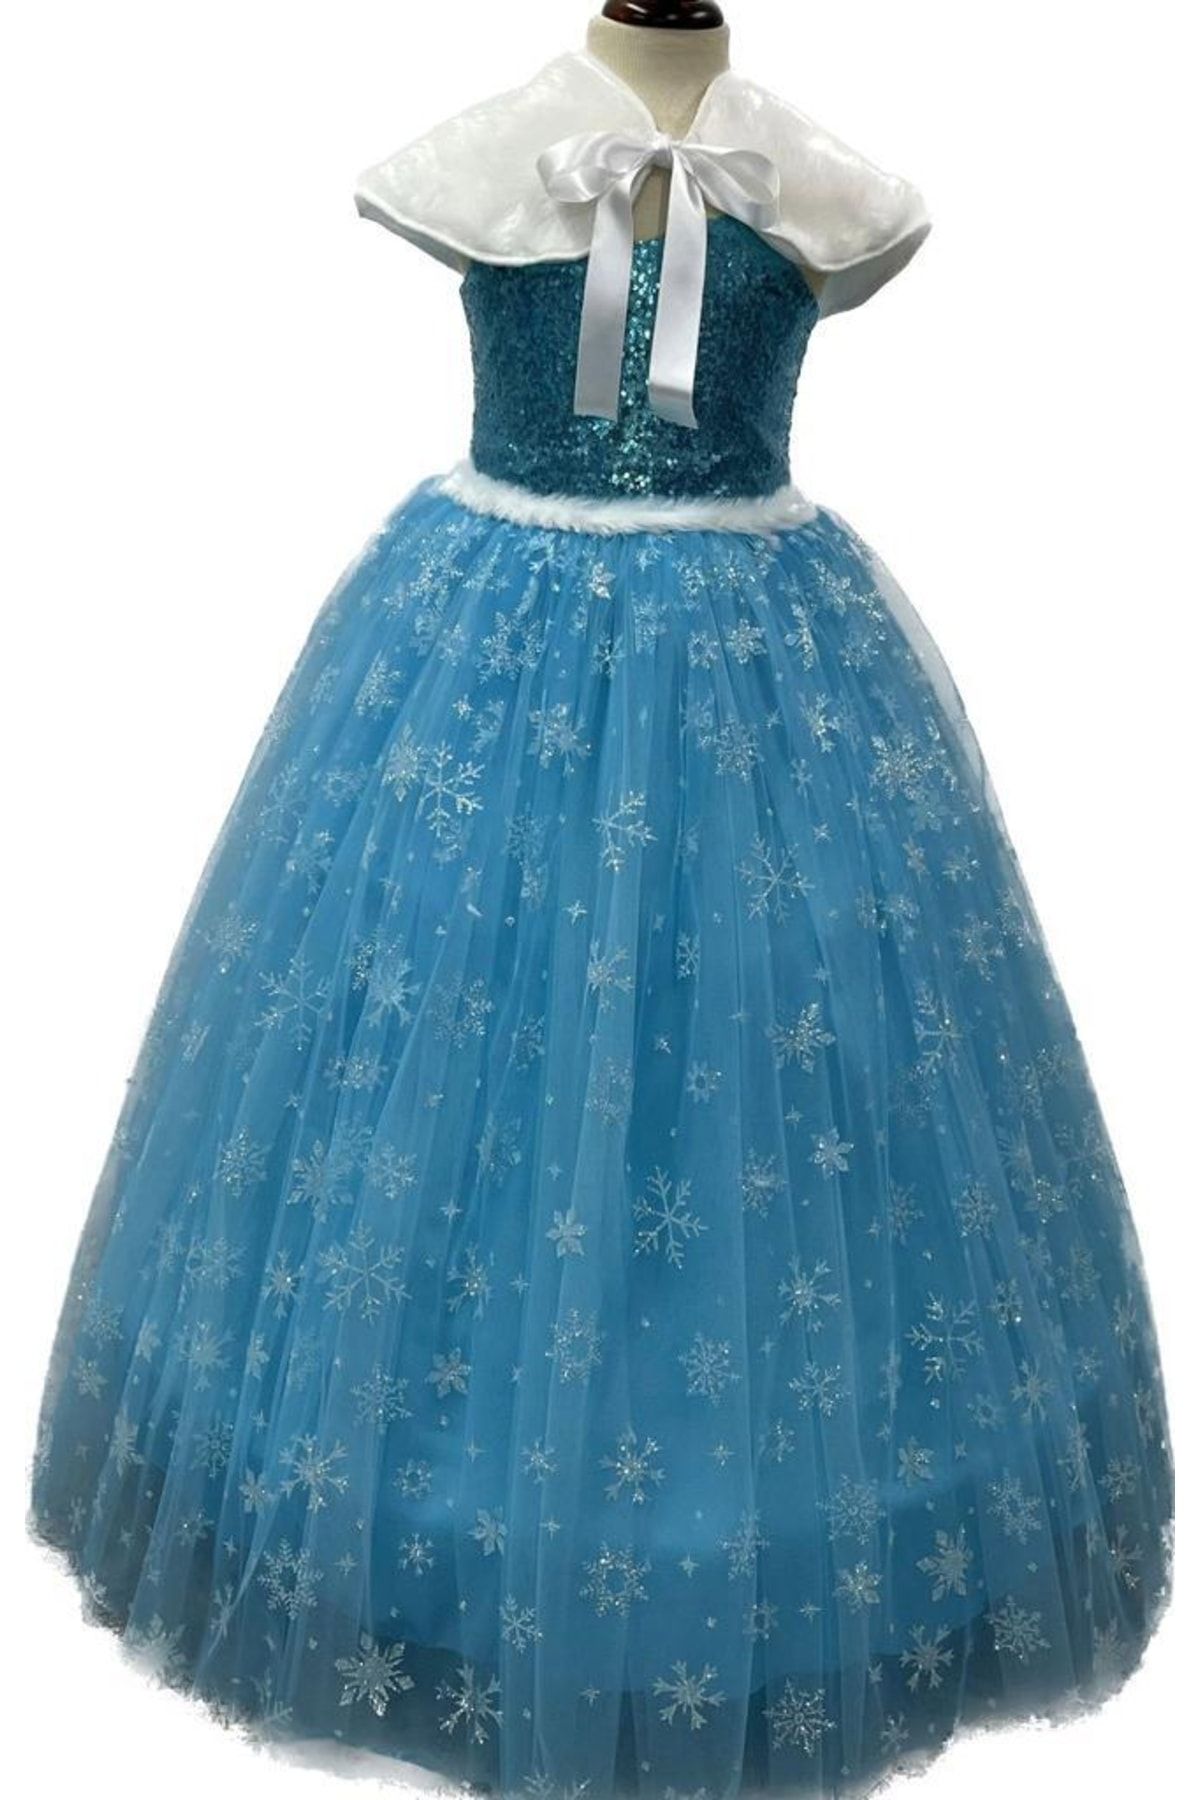 BUTİKHAPPYKİDS Kız Çocuk Frozen Elsa Kostümü Askılı Bolero Lu Takım Taç Asa Saç Eldiven  23 Nisan Kıyafeti